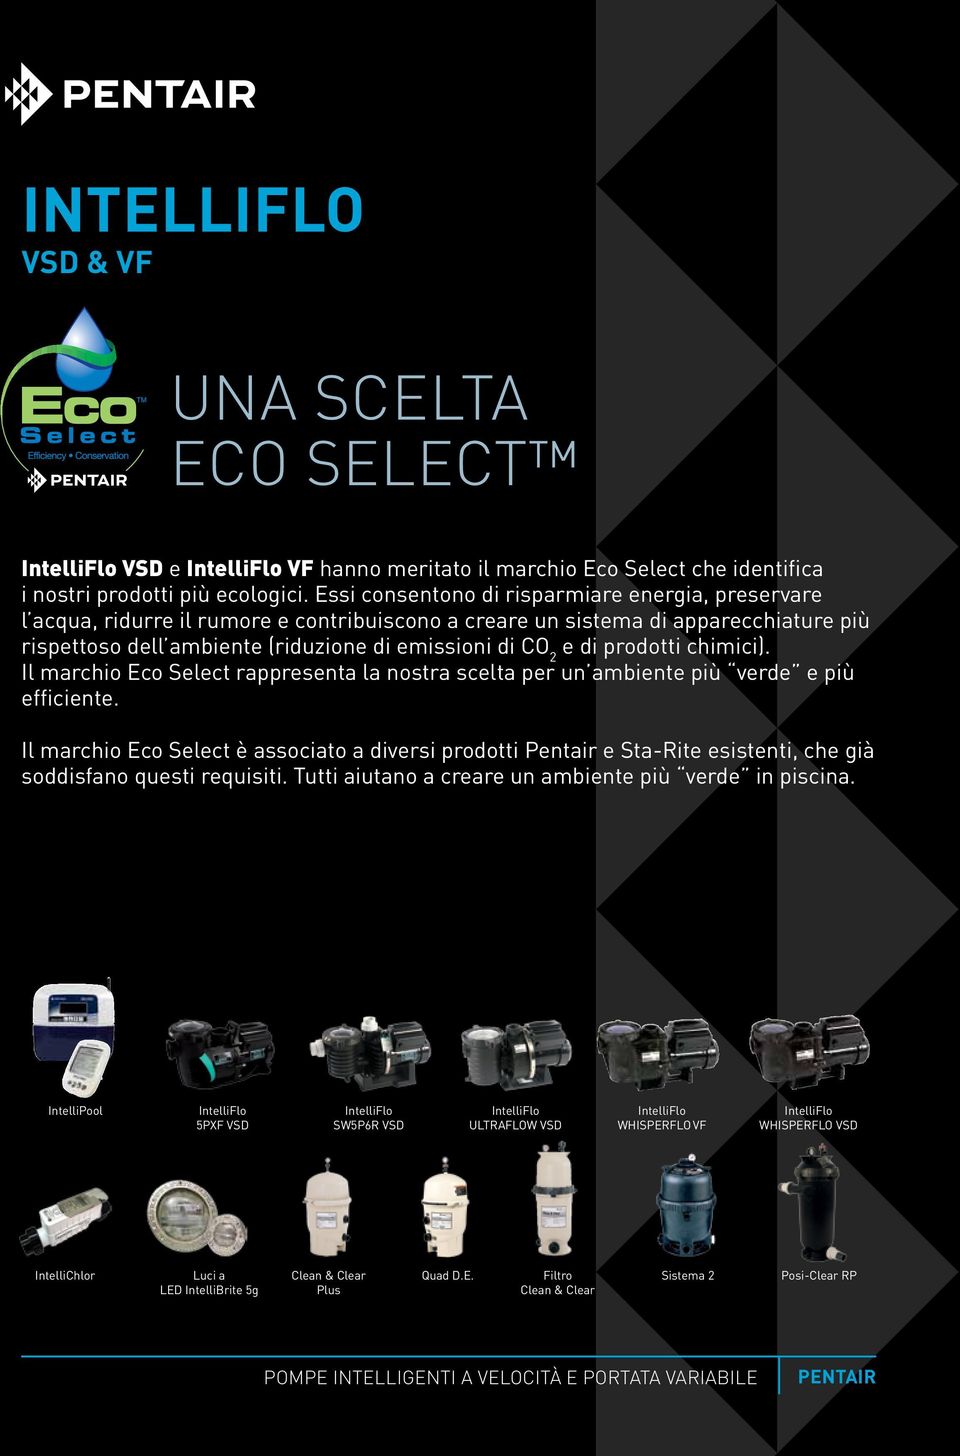 prodotti chimici). Il marchio Eco Select rappresenta la nostra scelta per un ambiente più verde e più efficiente.